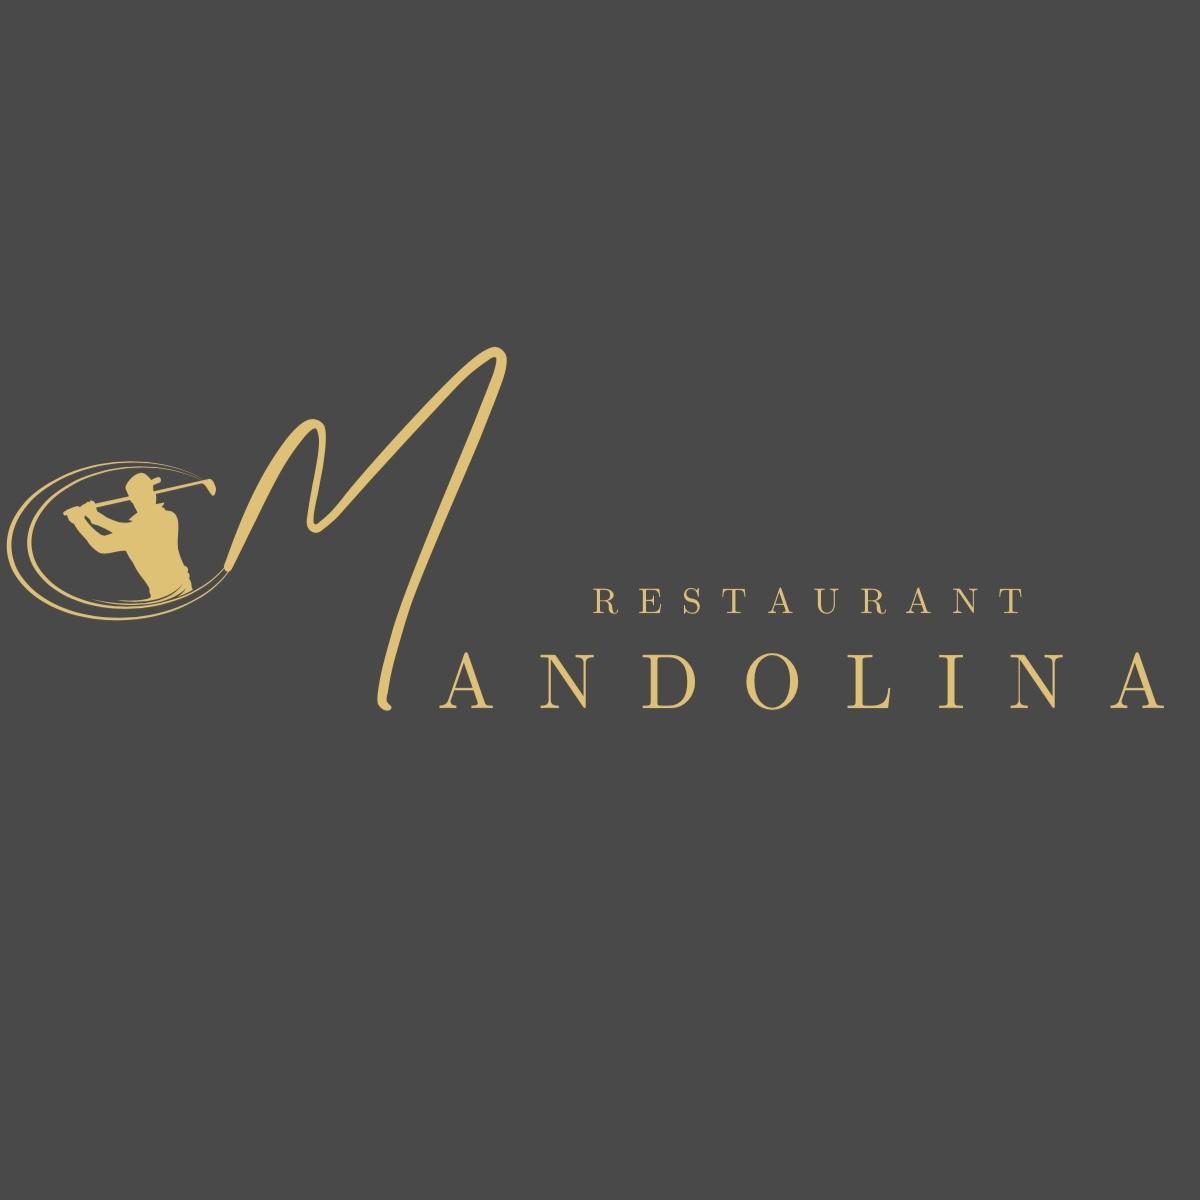 Restaurant "Restaurant Mandolina" in Odelzhausen